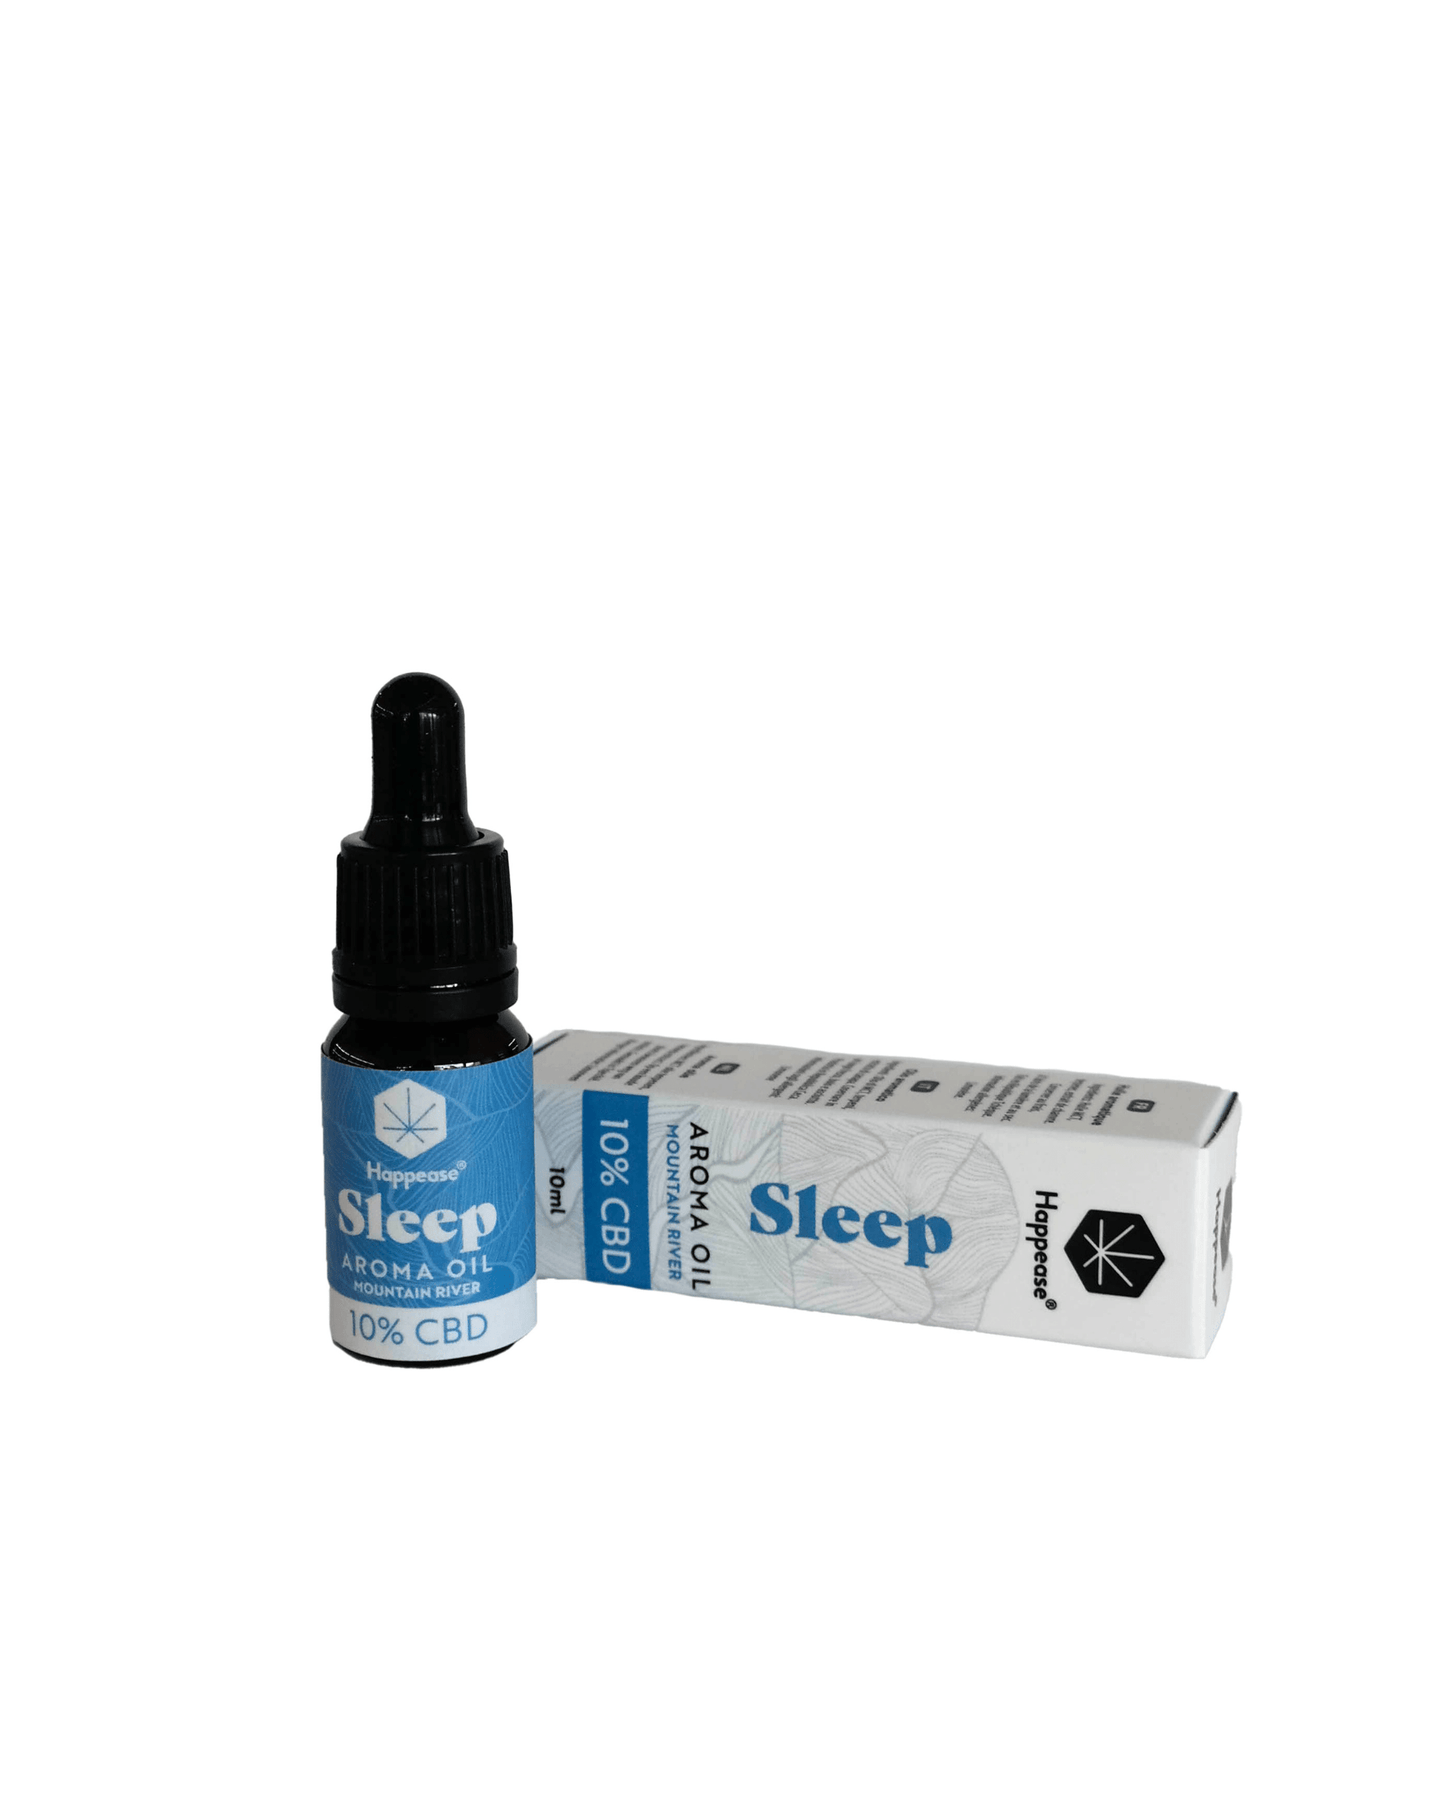 happease-sleep-aromaoel-cbd-10-prozent-mit-verpackung